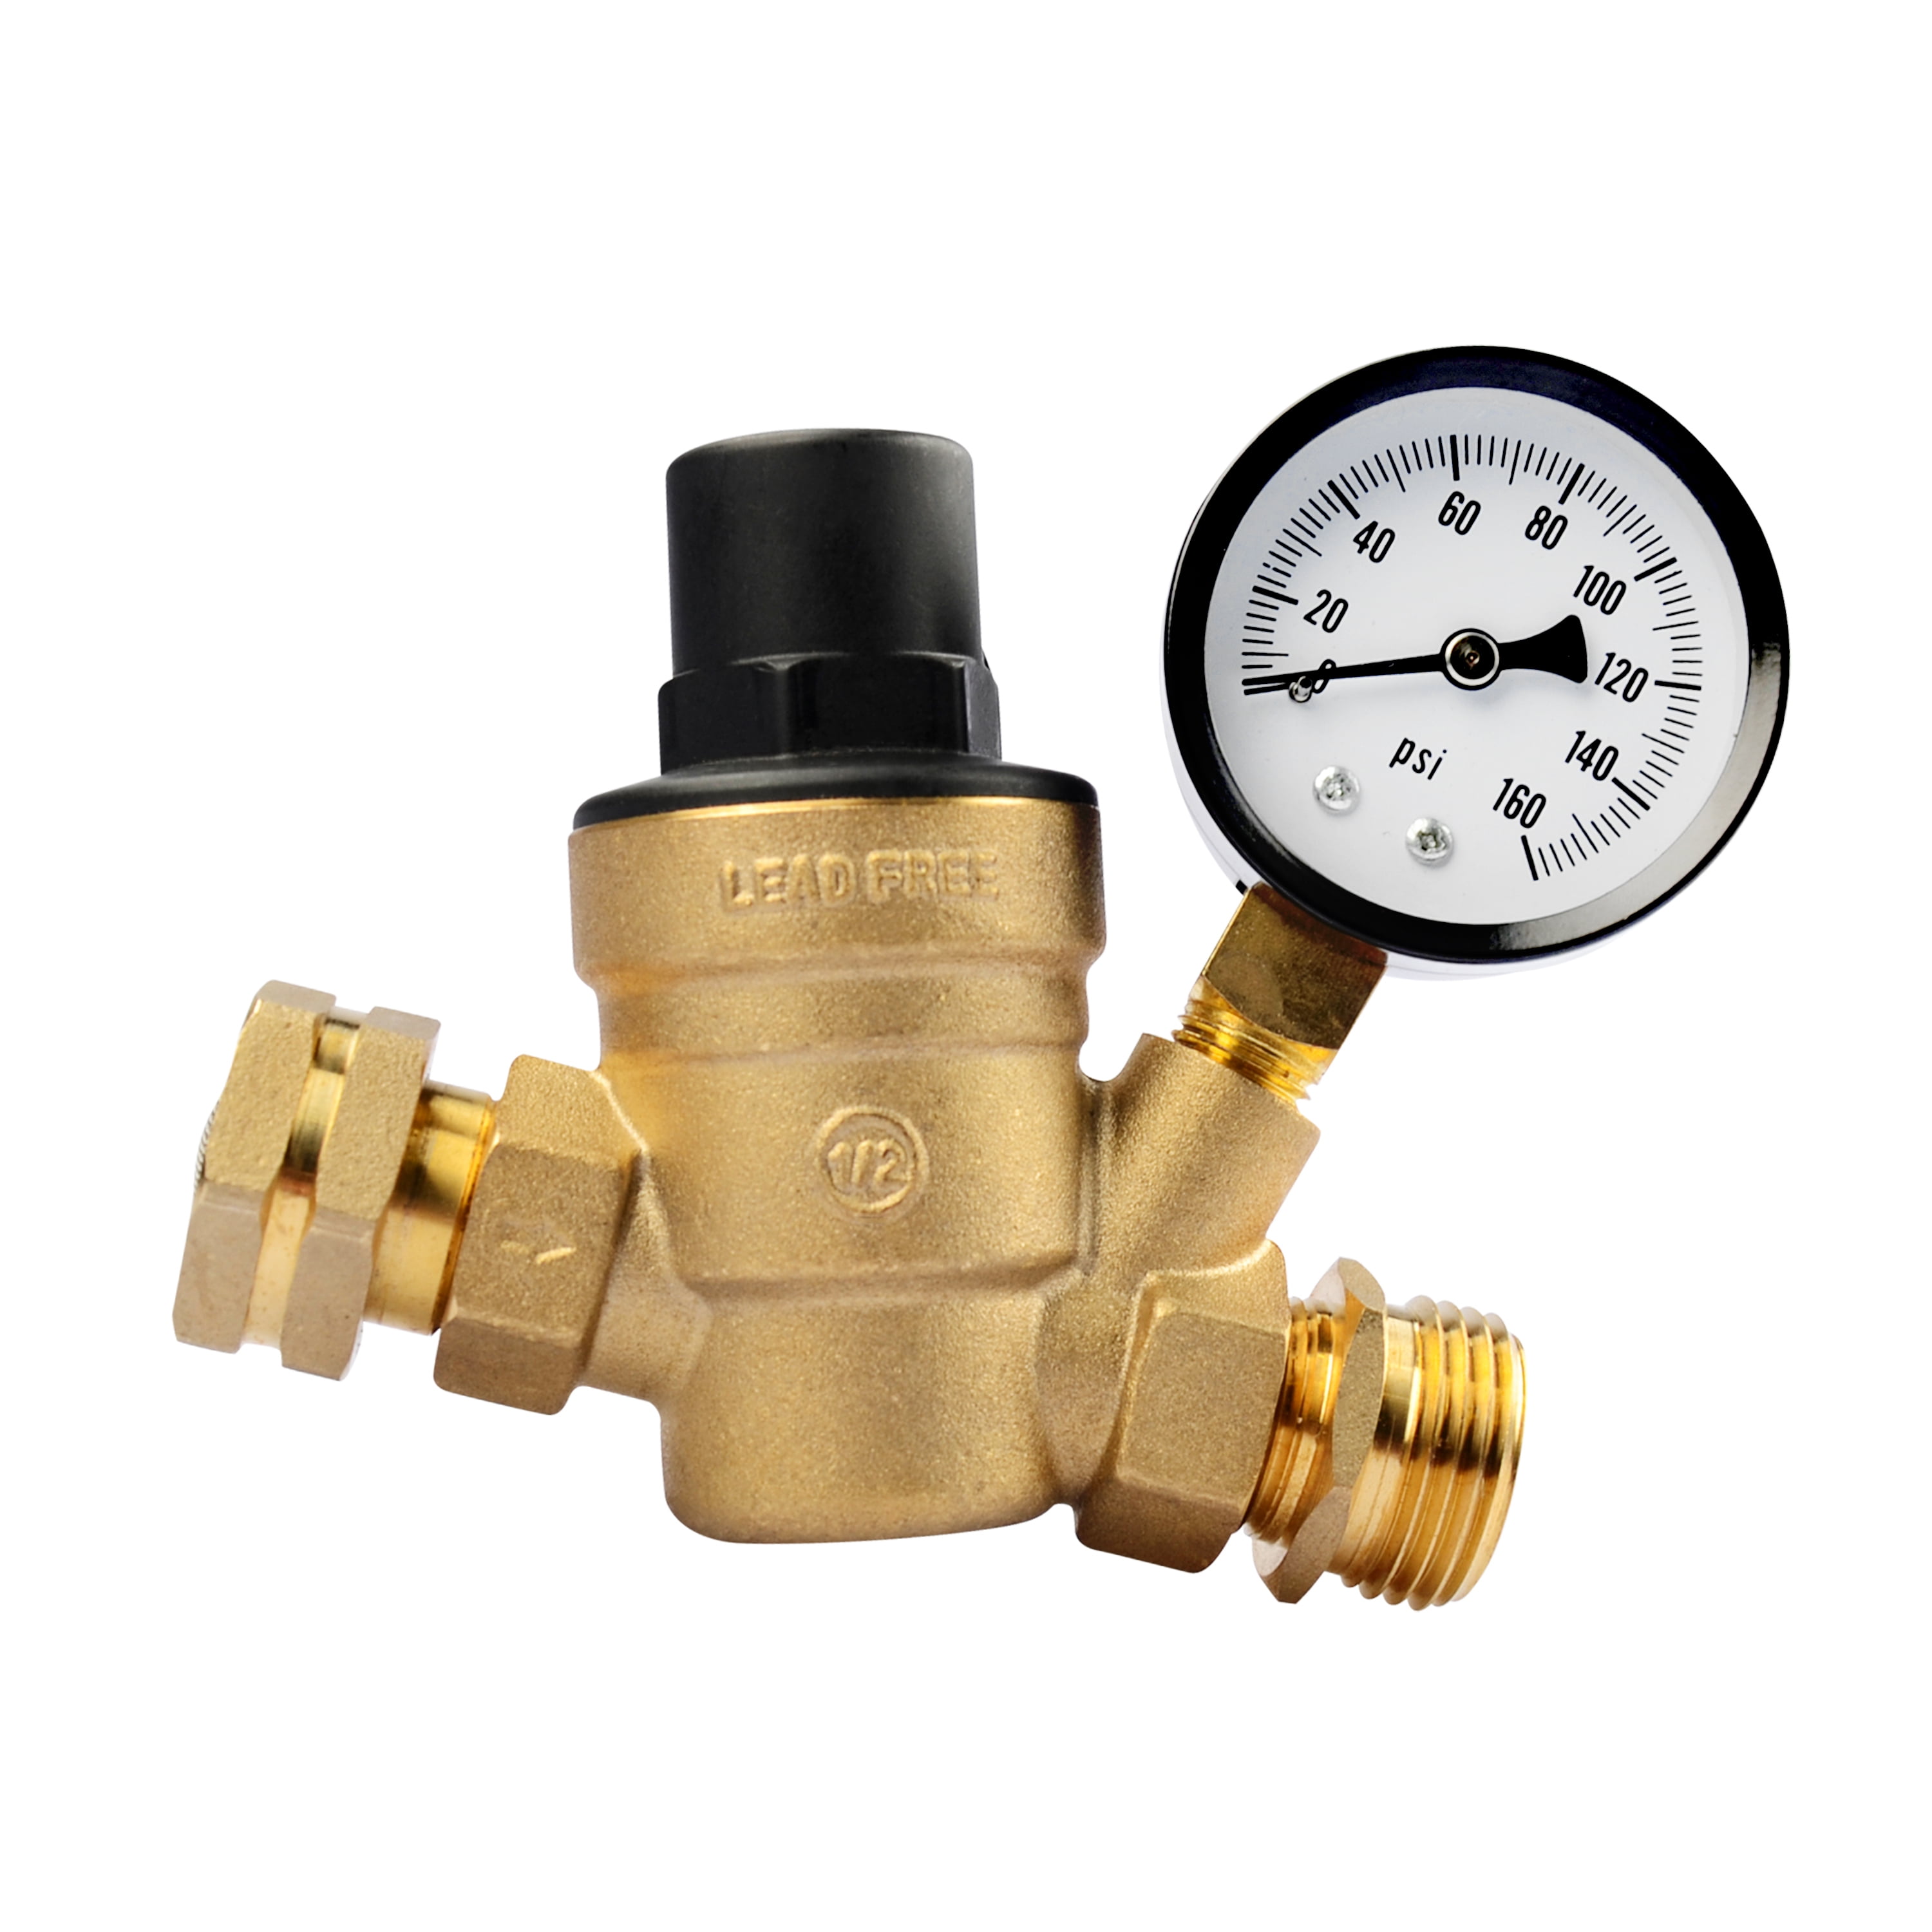 Leisure Coachworks RV Camper Water Pressure Regulator Brass LEAD FREE Best Adjustable Water Pressure Regulator For Rv